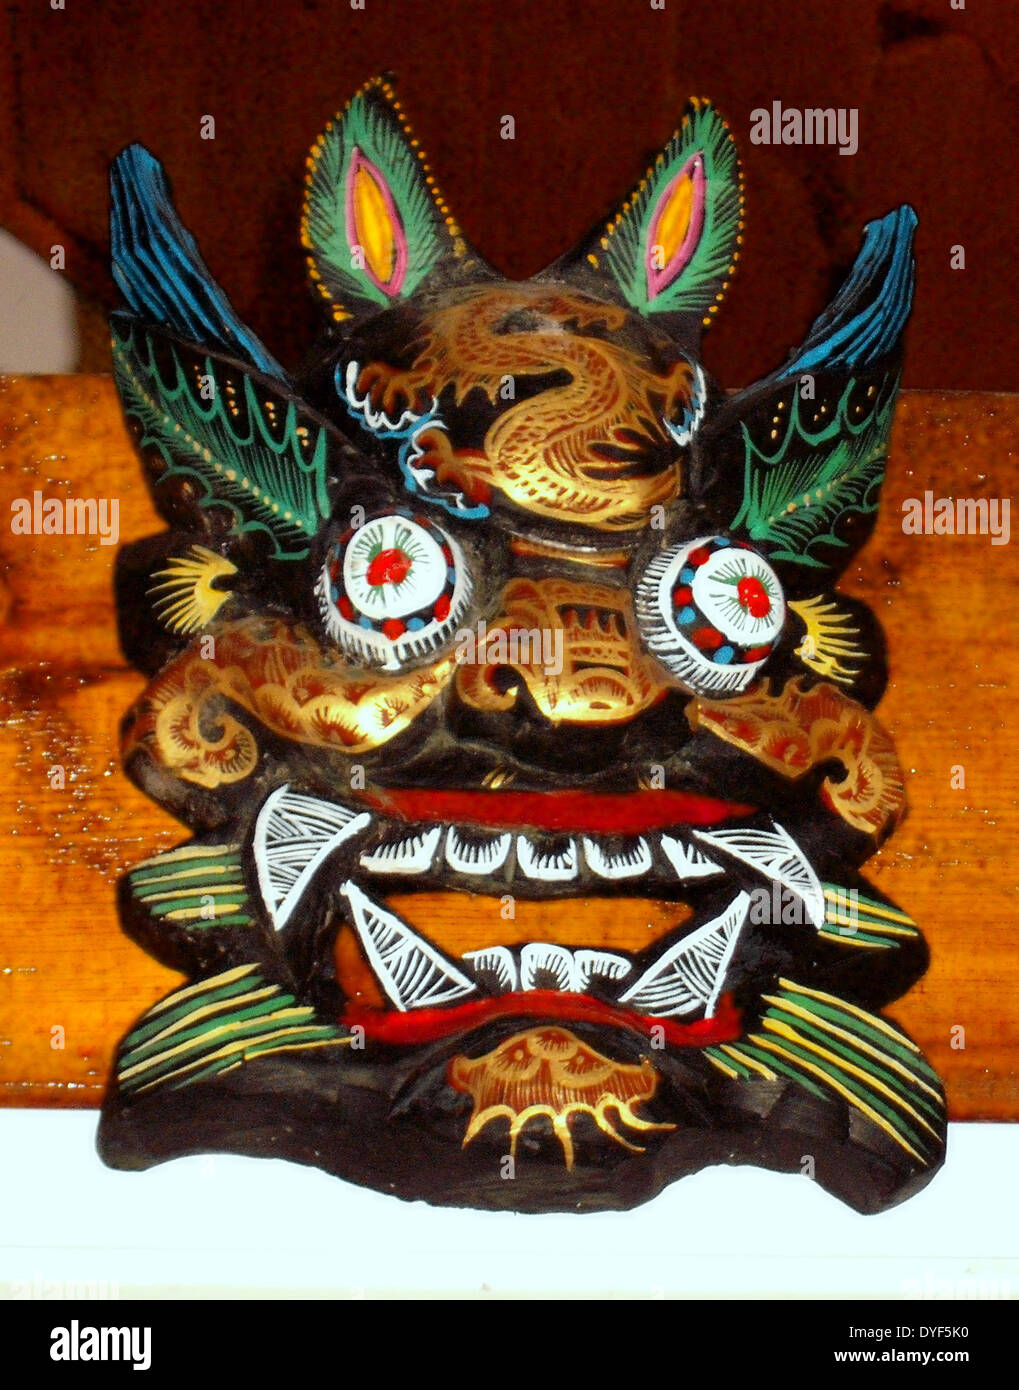 L'ancien Tibet : Mahakala masque, la fin de la dynastie des Qing ; 1800 - 1912 AD, une divinité protectrice. Bois peint.. Banque D'Images